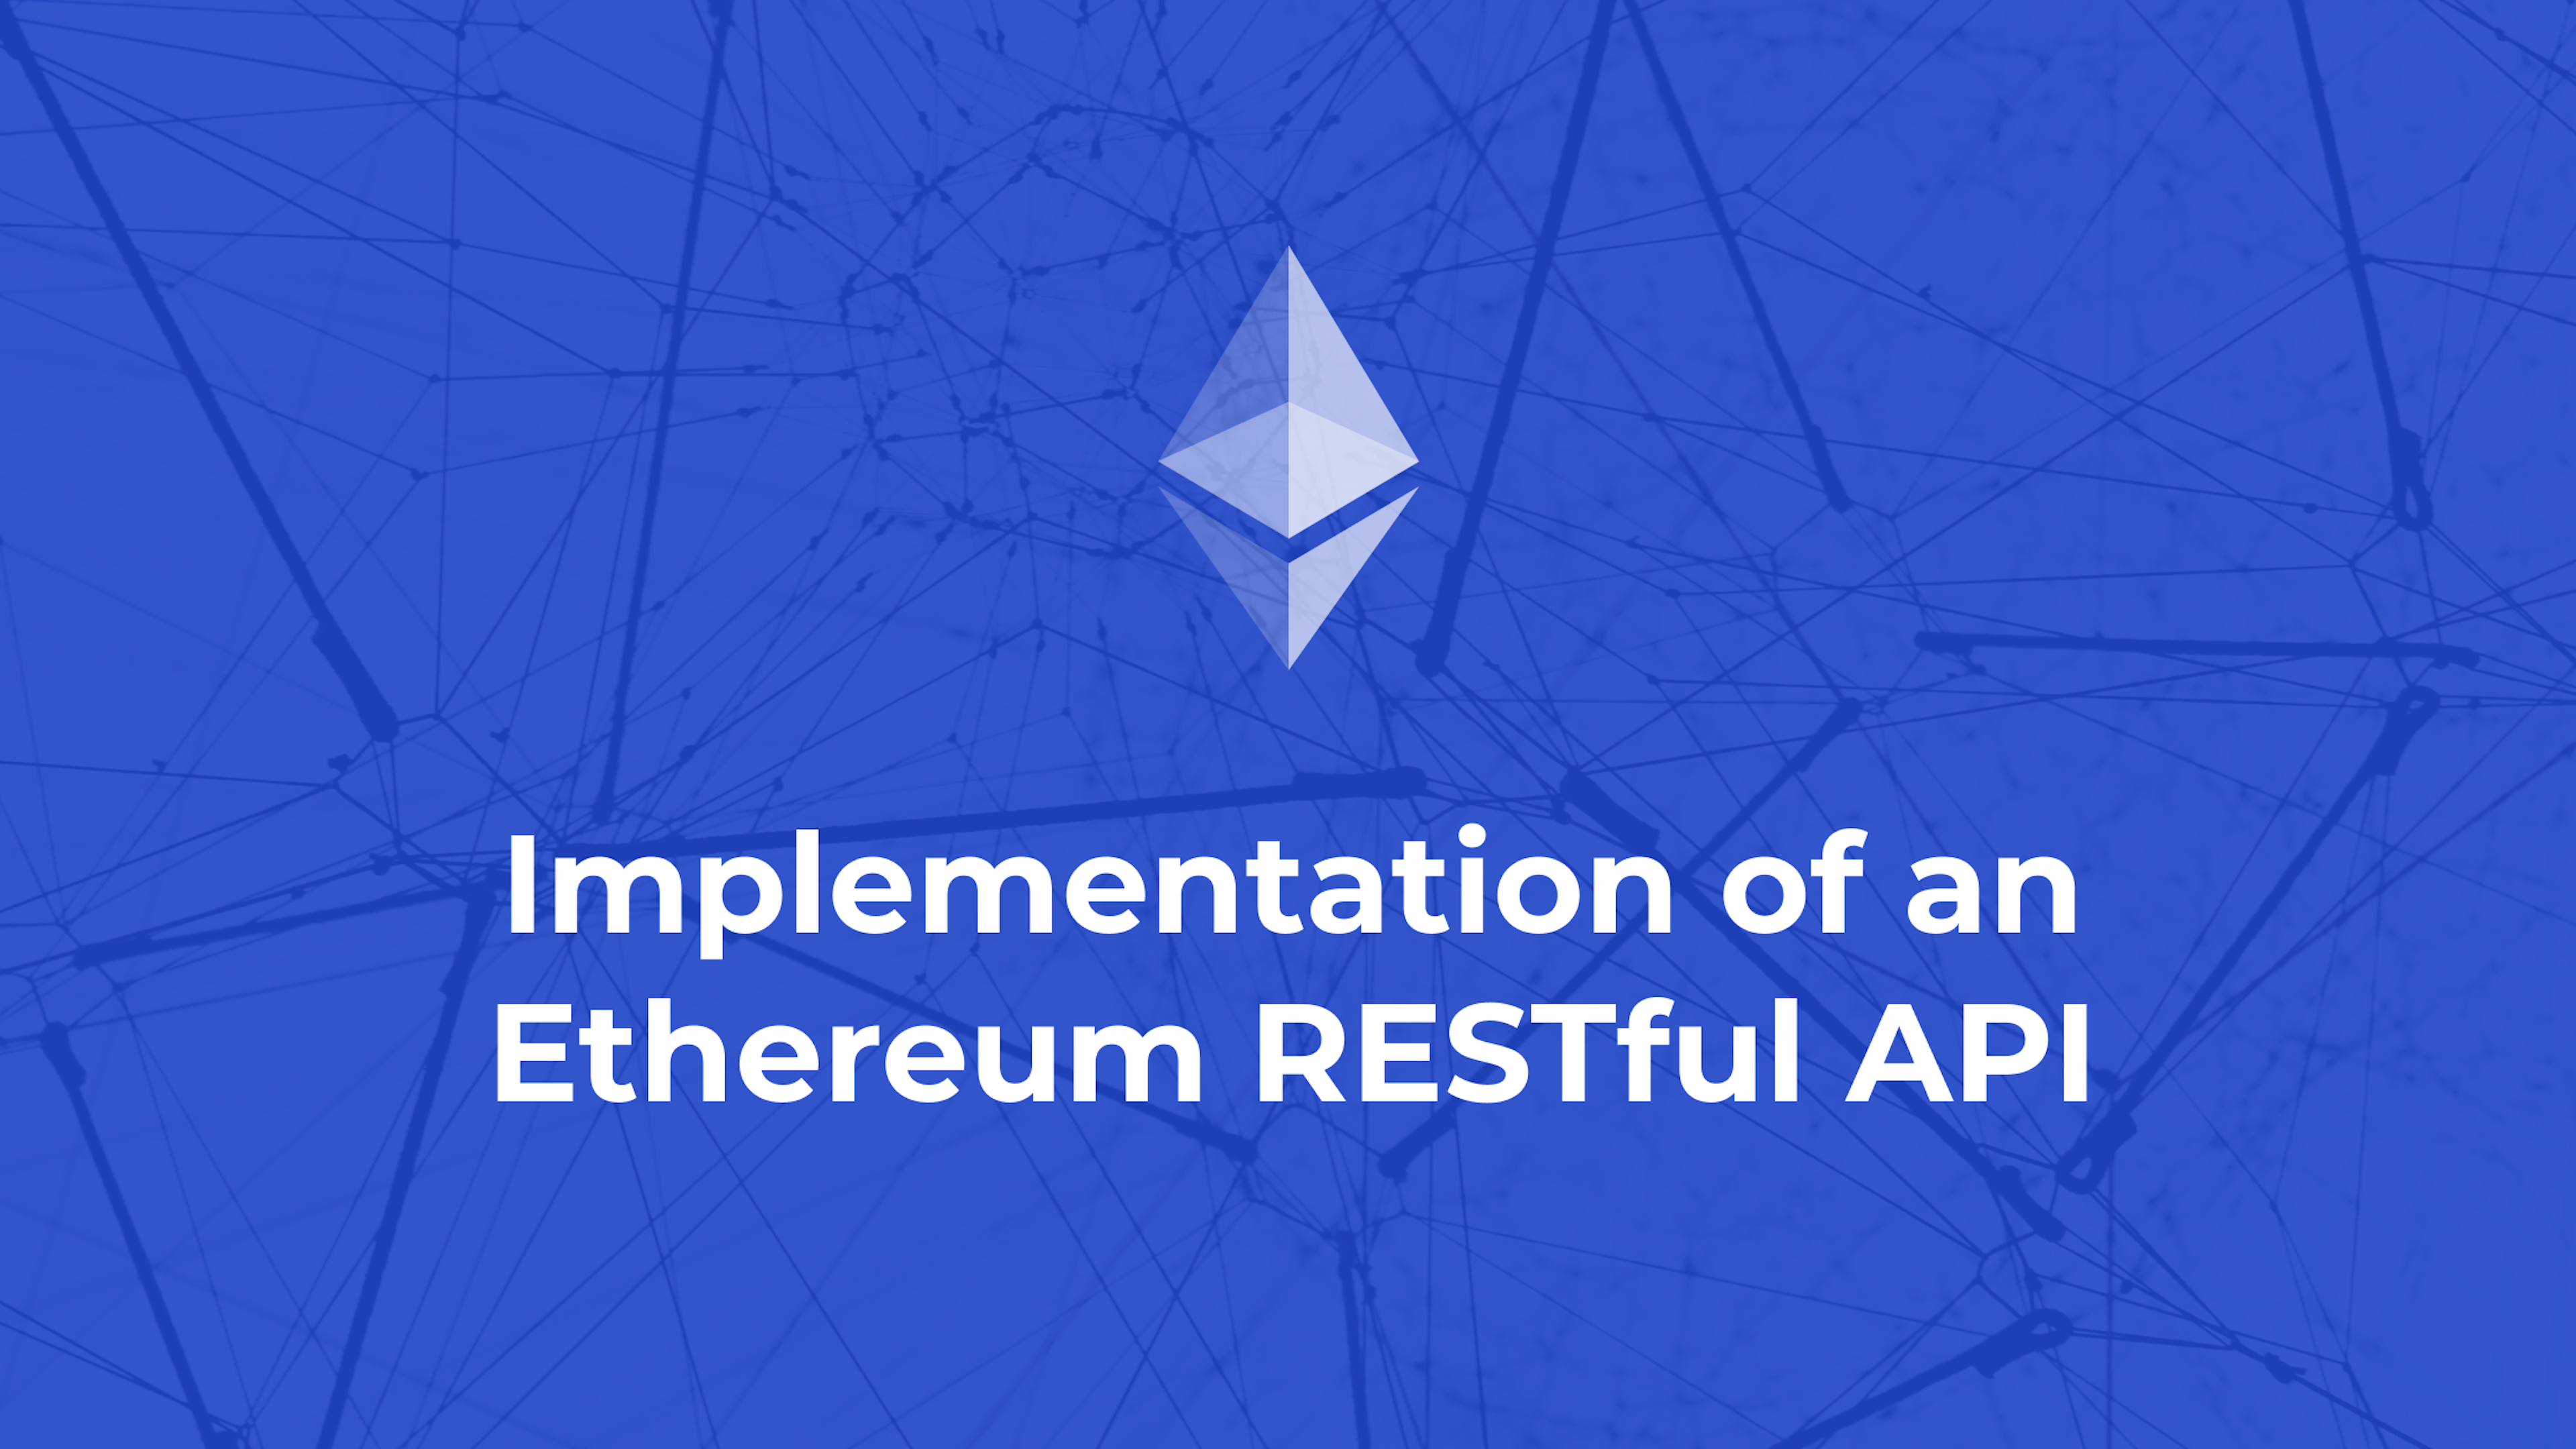 Implementation of an Ethereum RESTful API